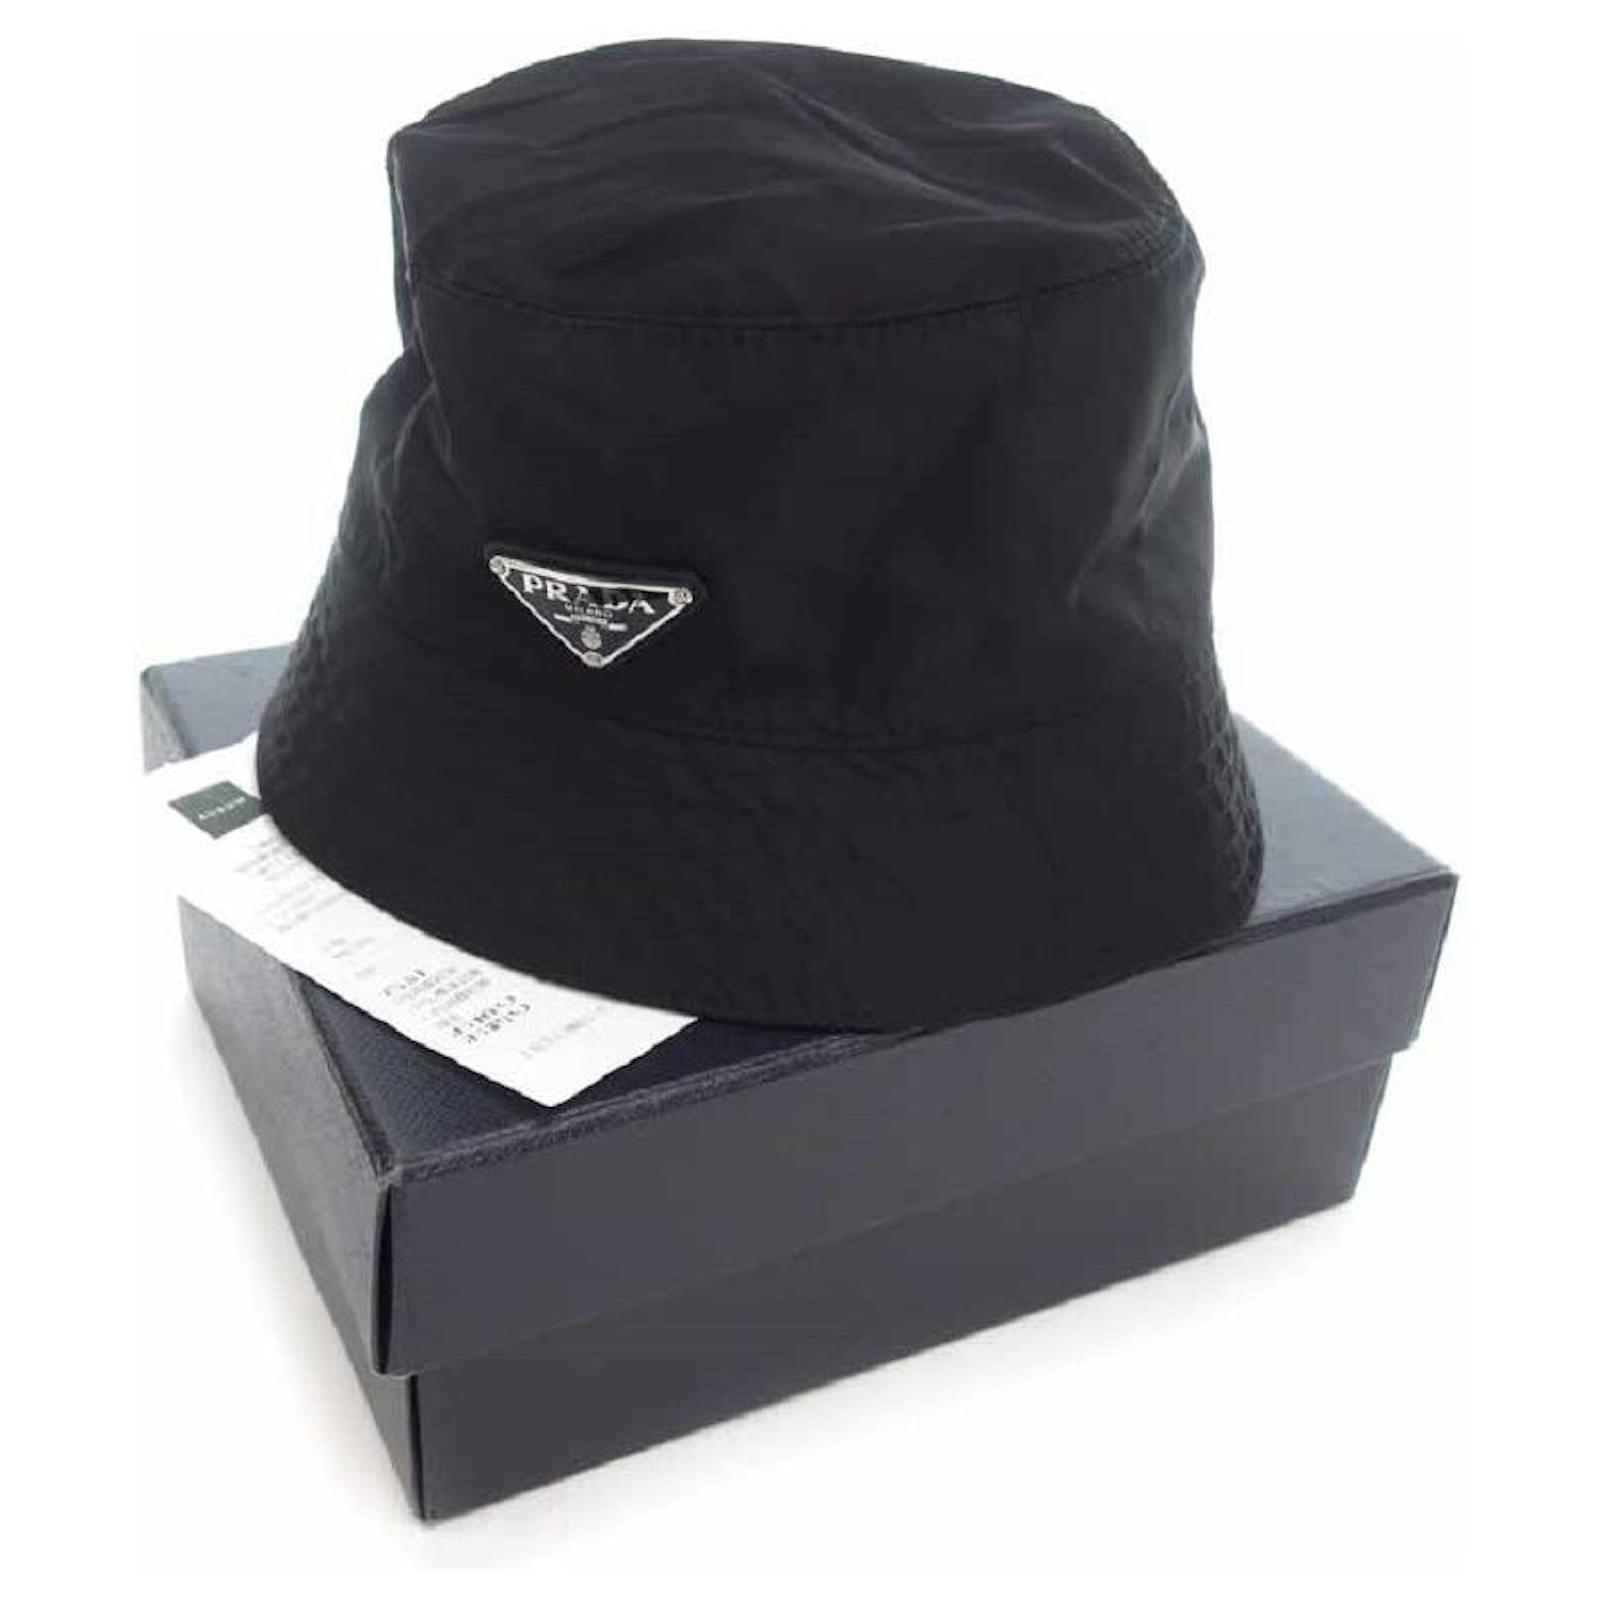 Designer Label Bucket Hats : Prada bucket hat